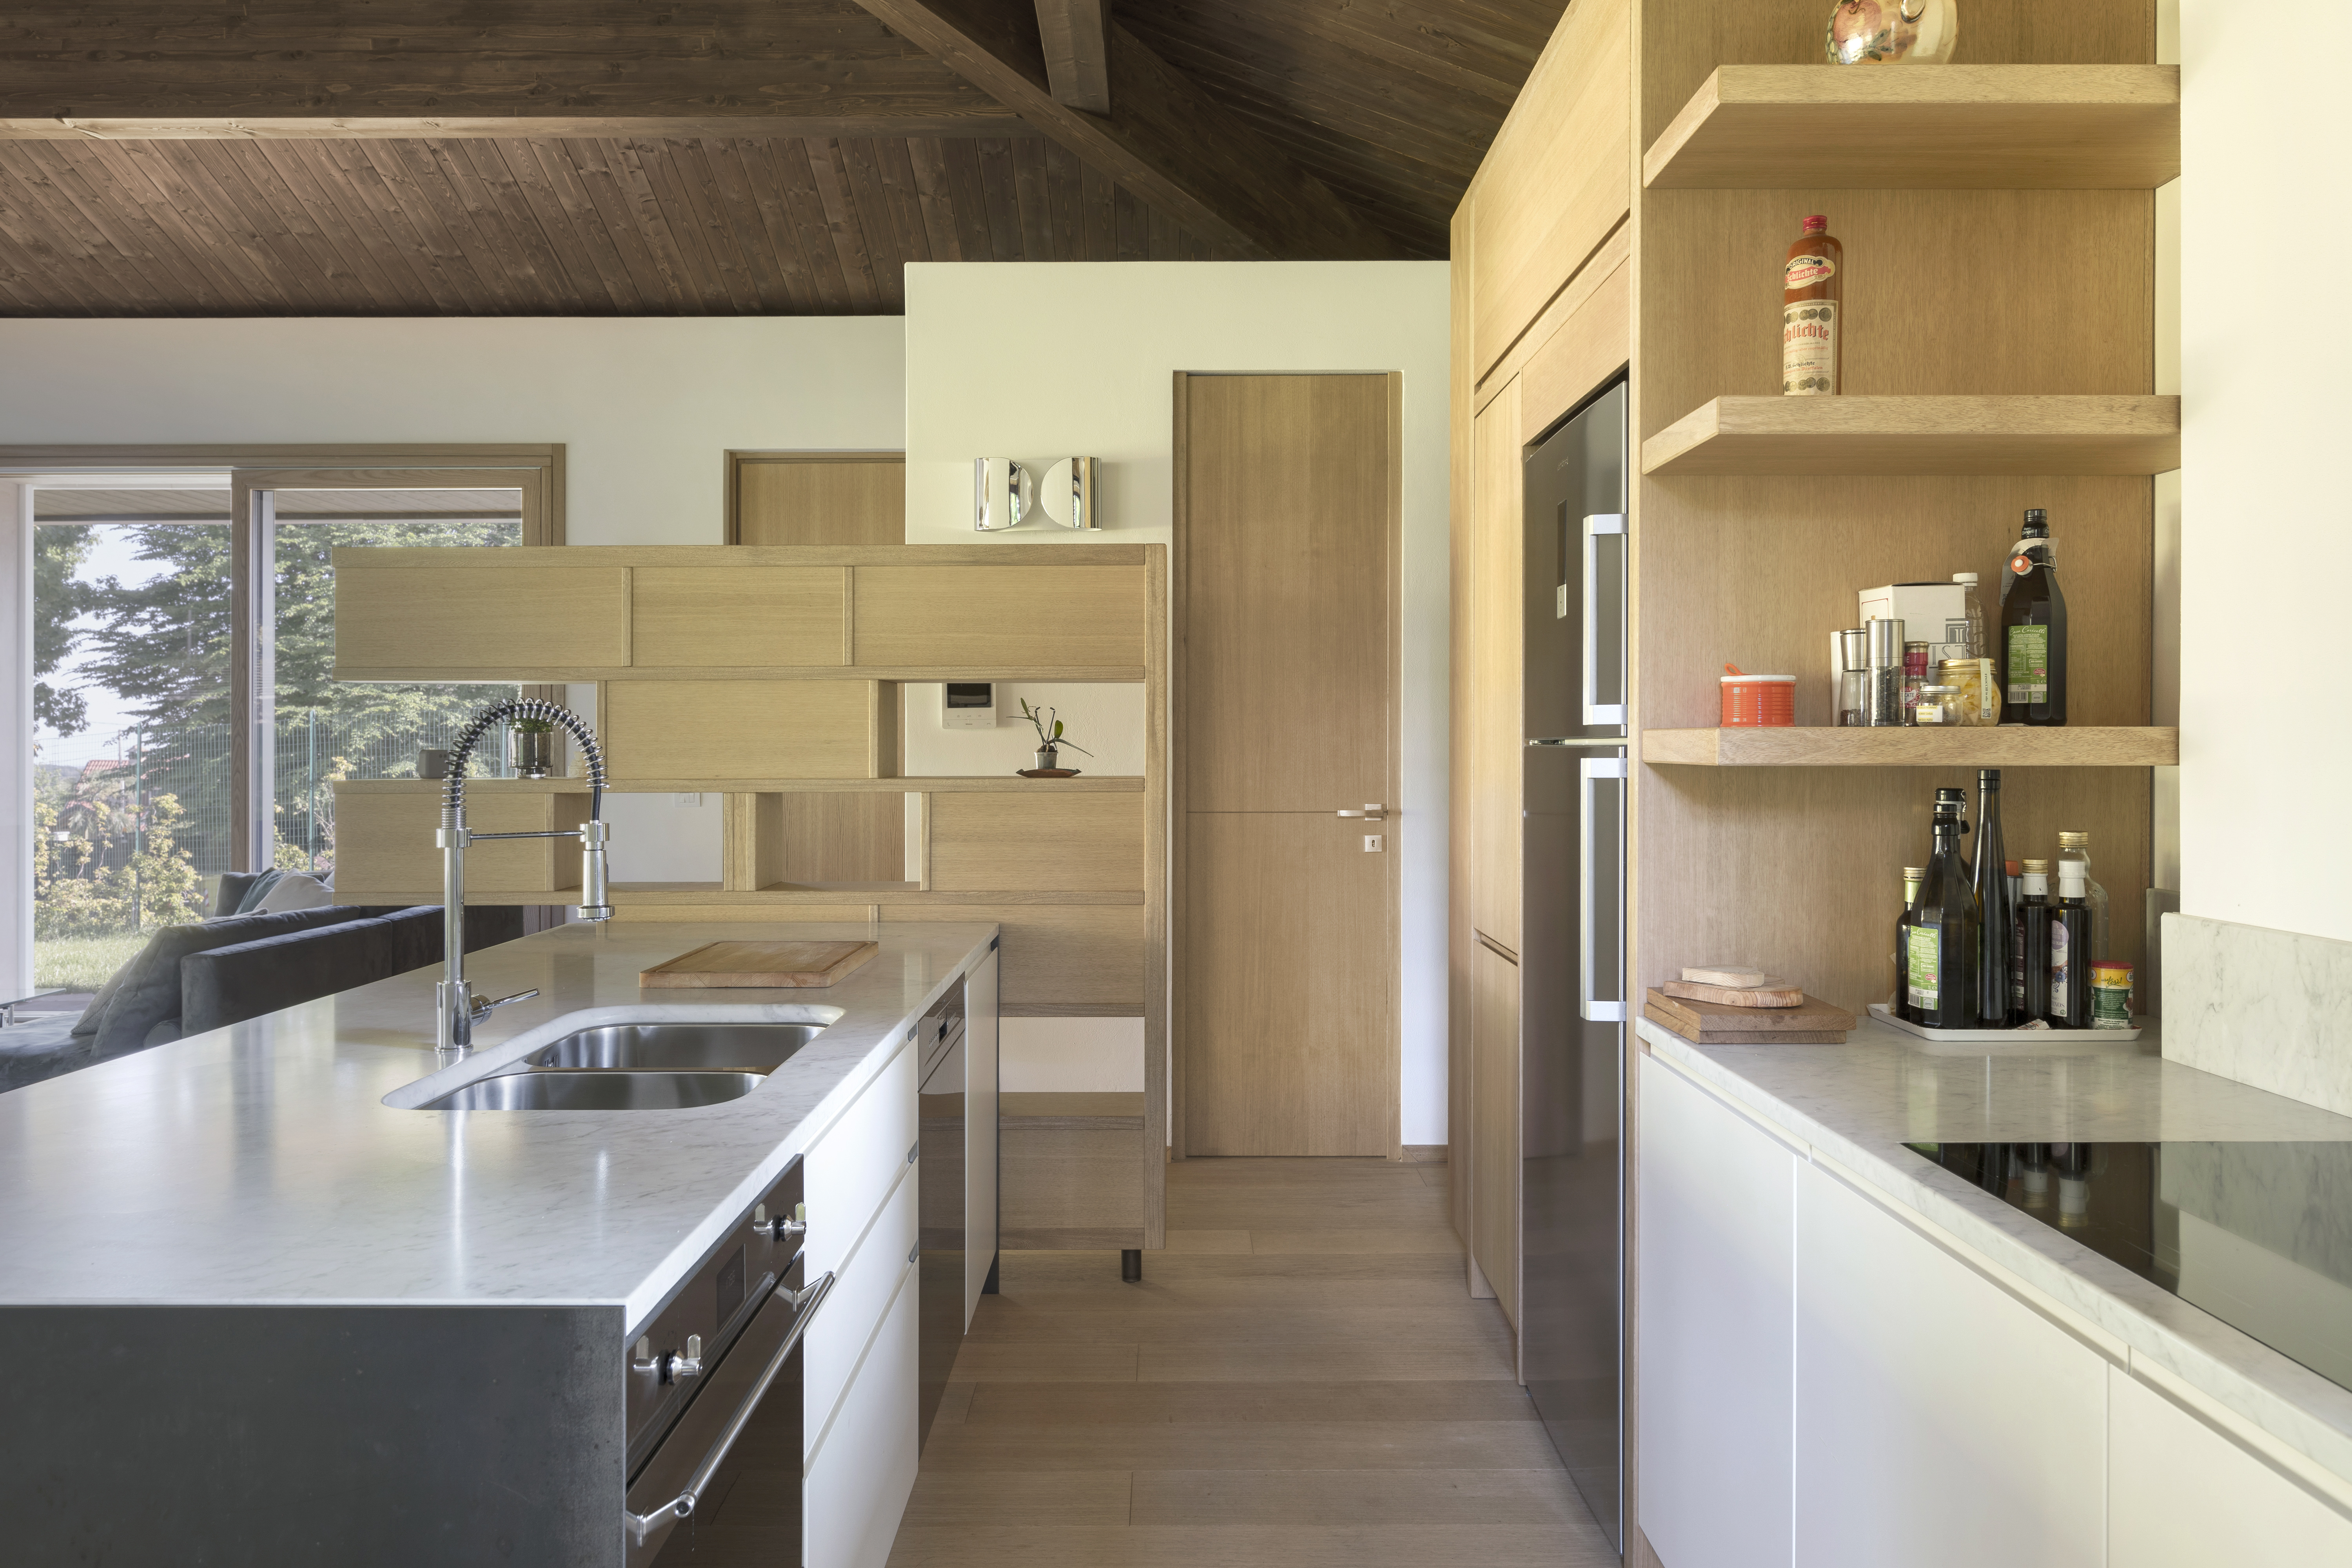 Interni: cucina in openspace, grandi serramenti in legno con affaccio sul verde esterno 